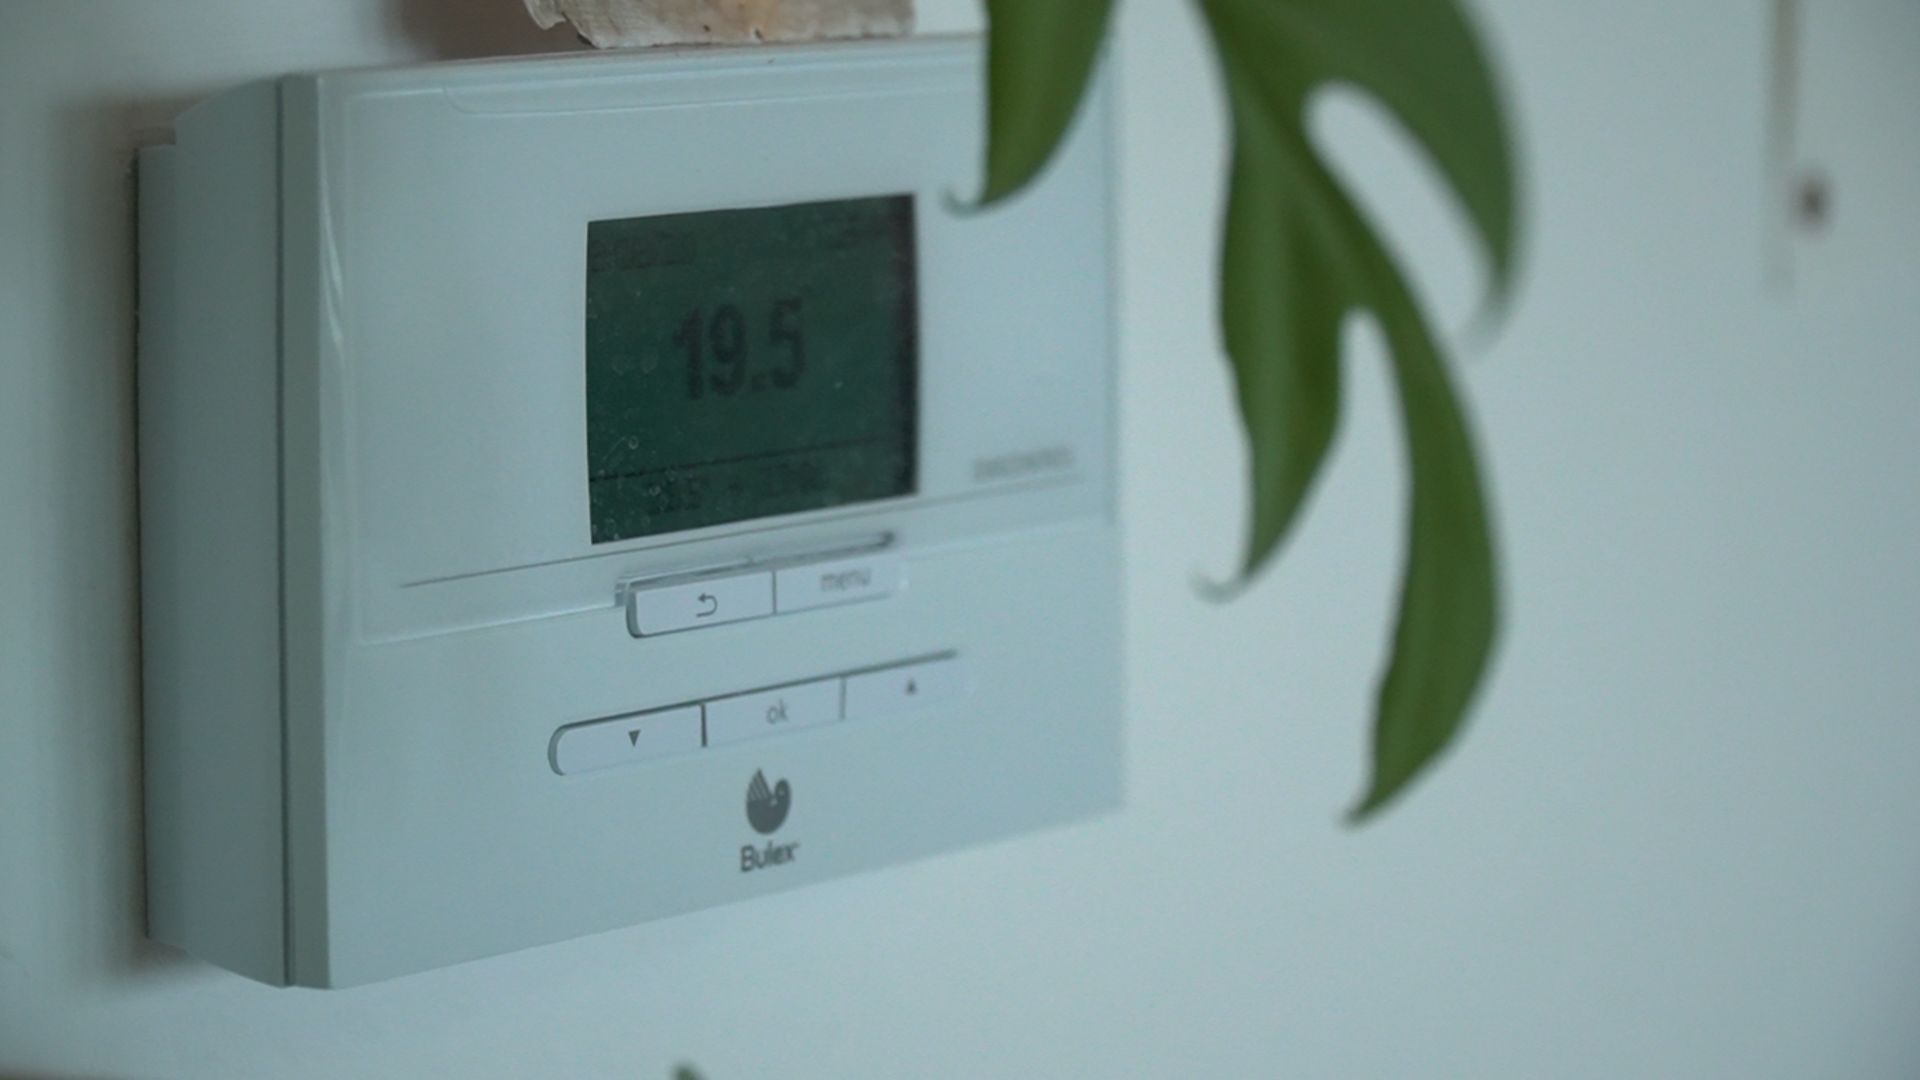 La température idéale dans une habitation est de 19°C. Pour les chambres, réglez les vannes des radiateurs sur 2 afin de conserver une température autour de 16-17°C.